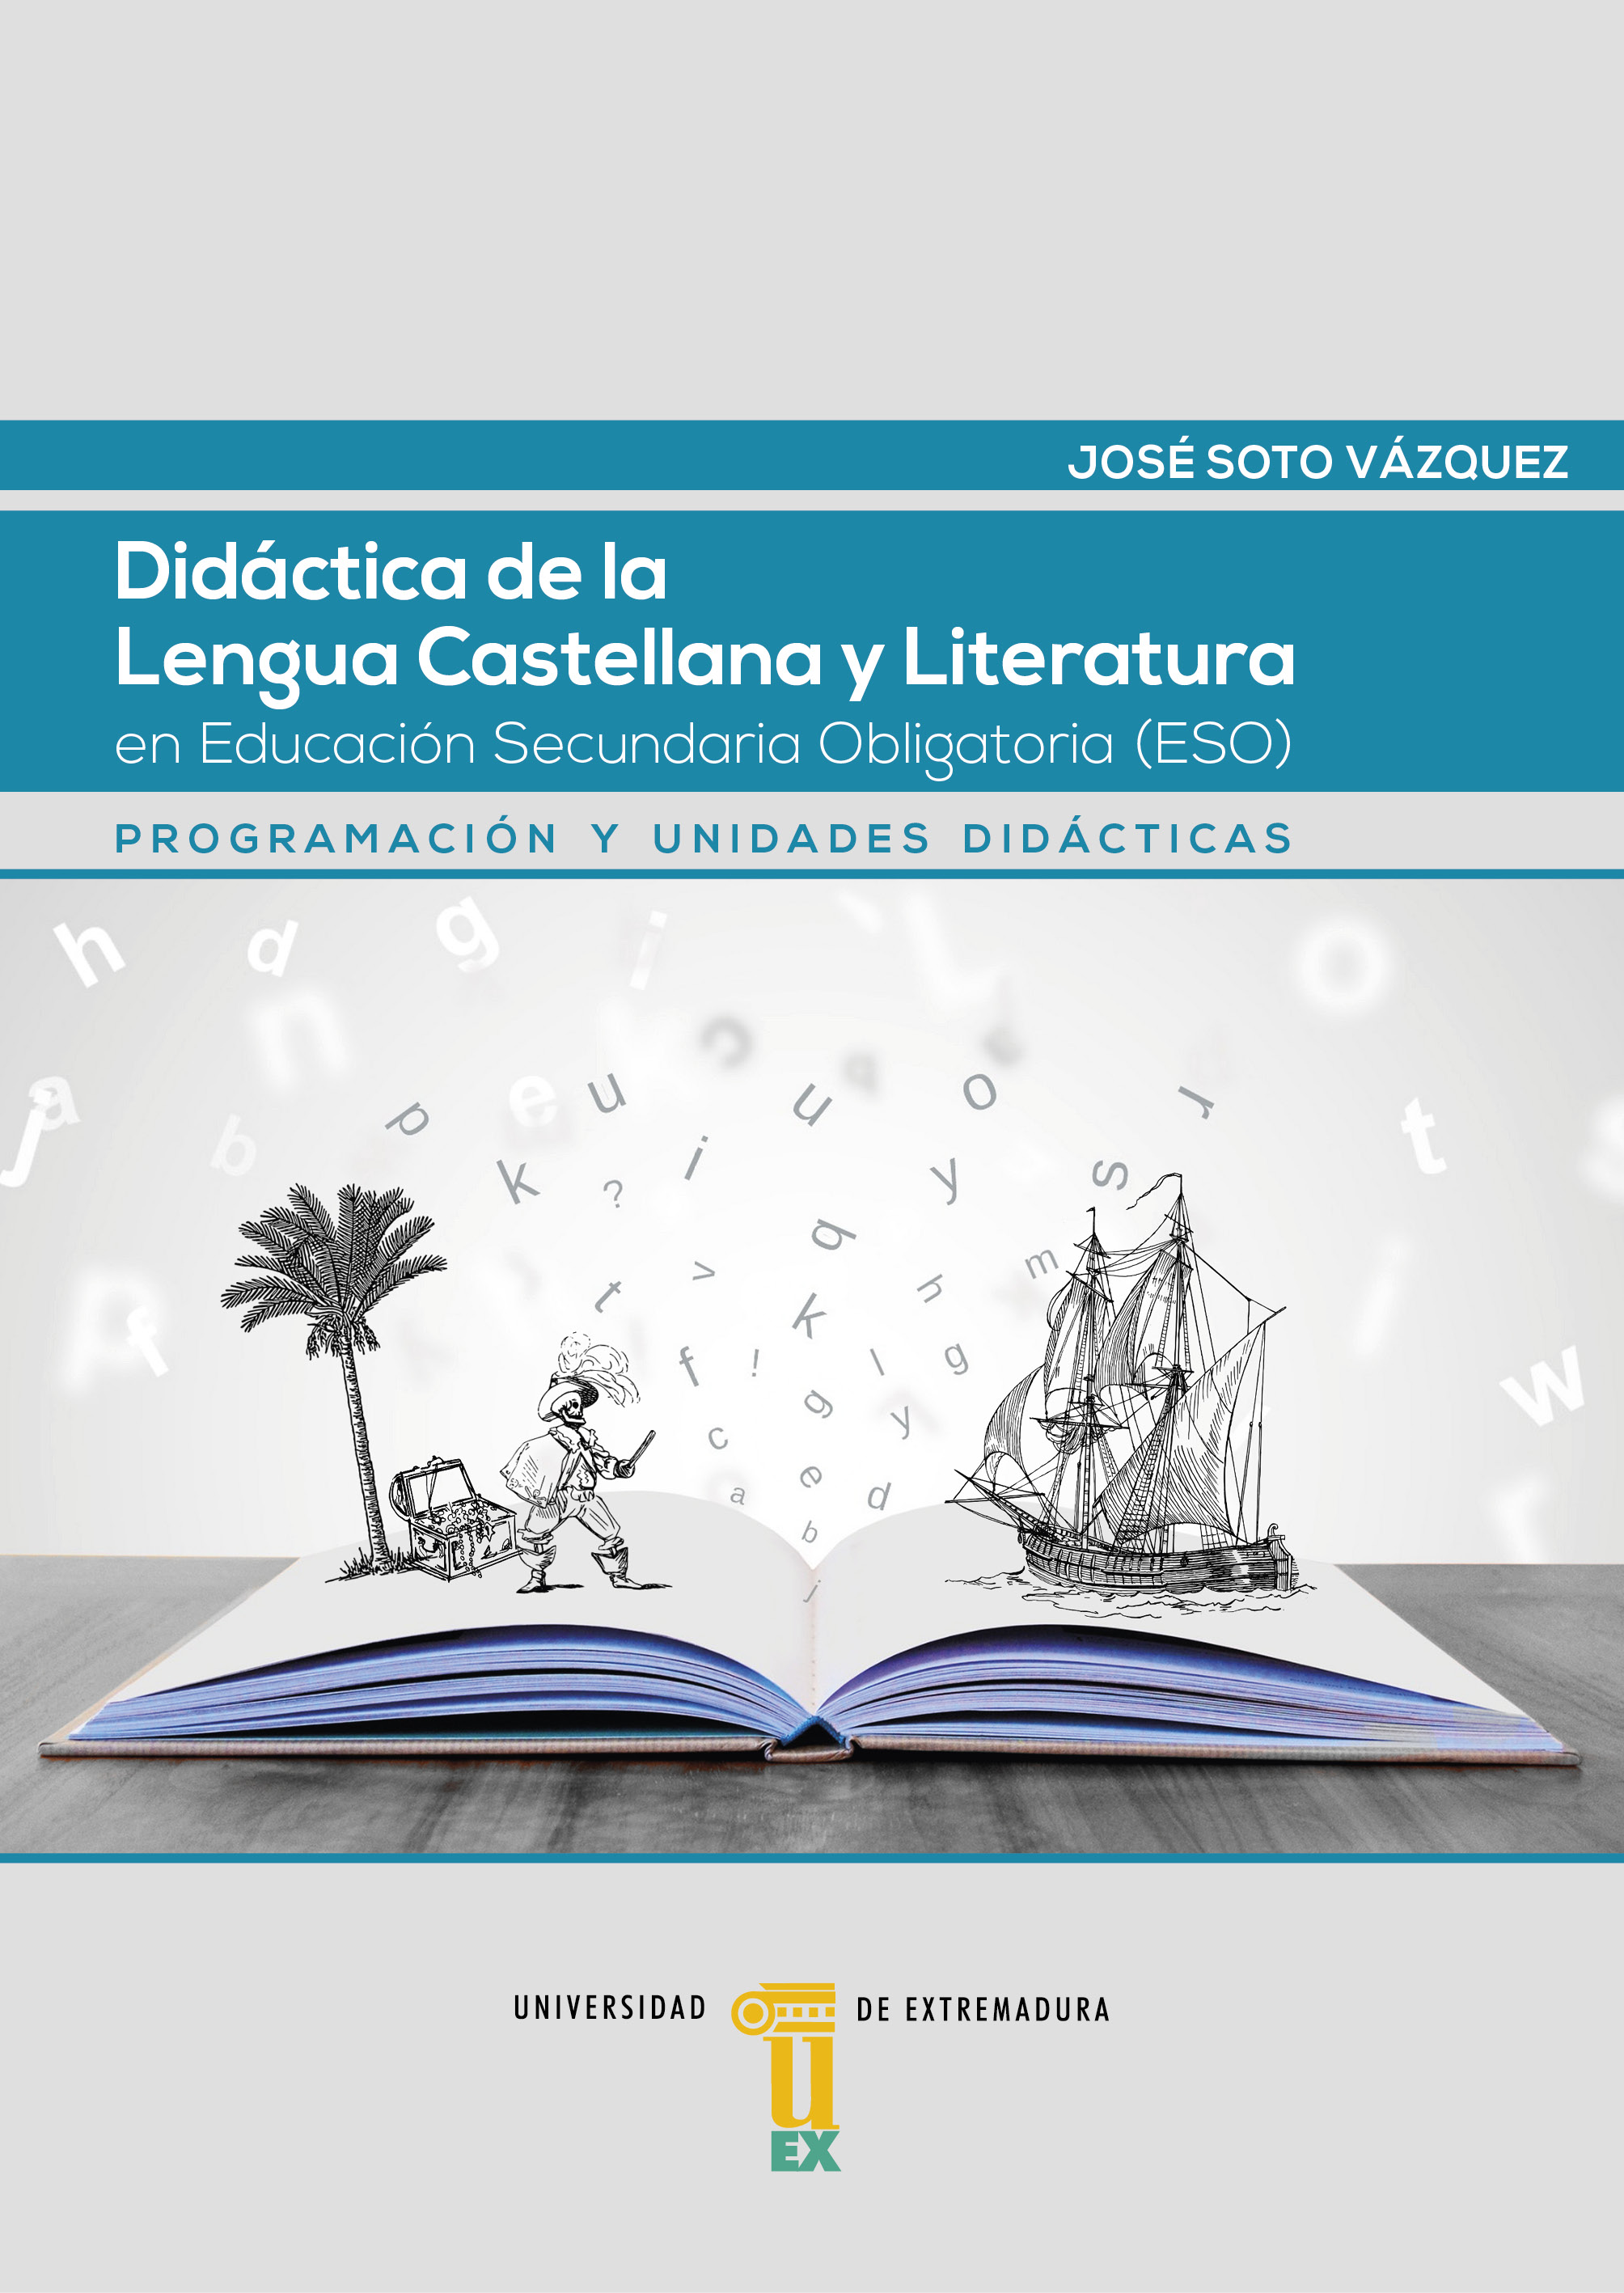 Imagen de portada del libro Didáctica de la lengua castellana y literatura en Educación Secundaria Obligatoria (ESO). Programación y unidades didácticas